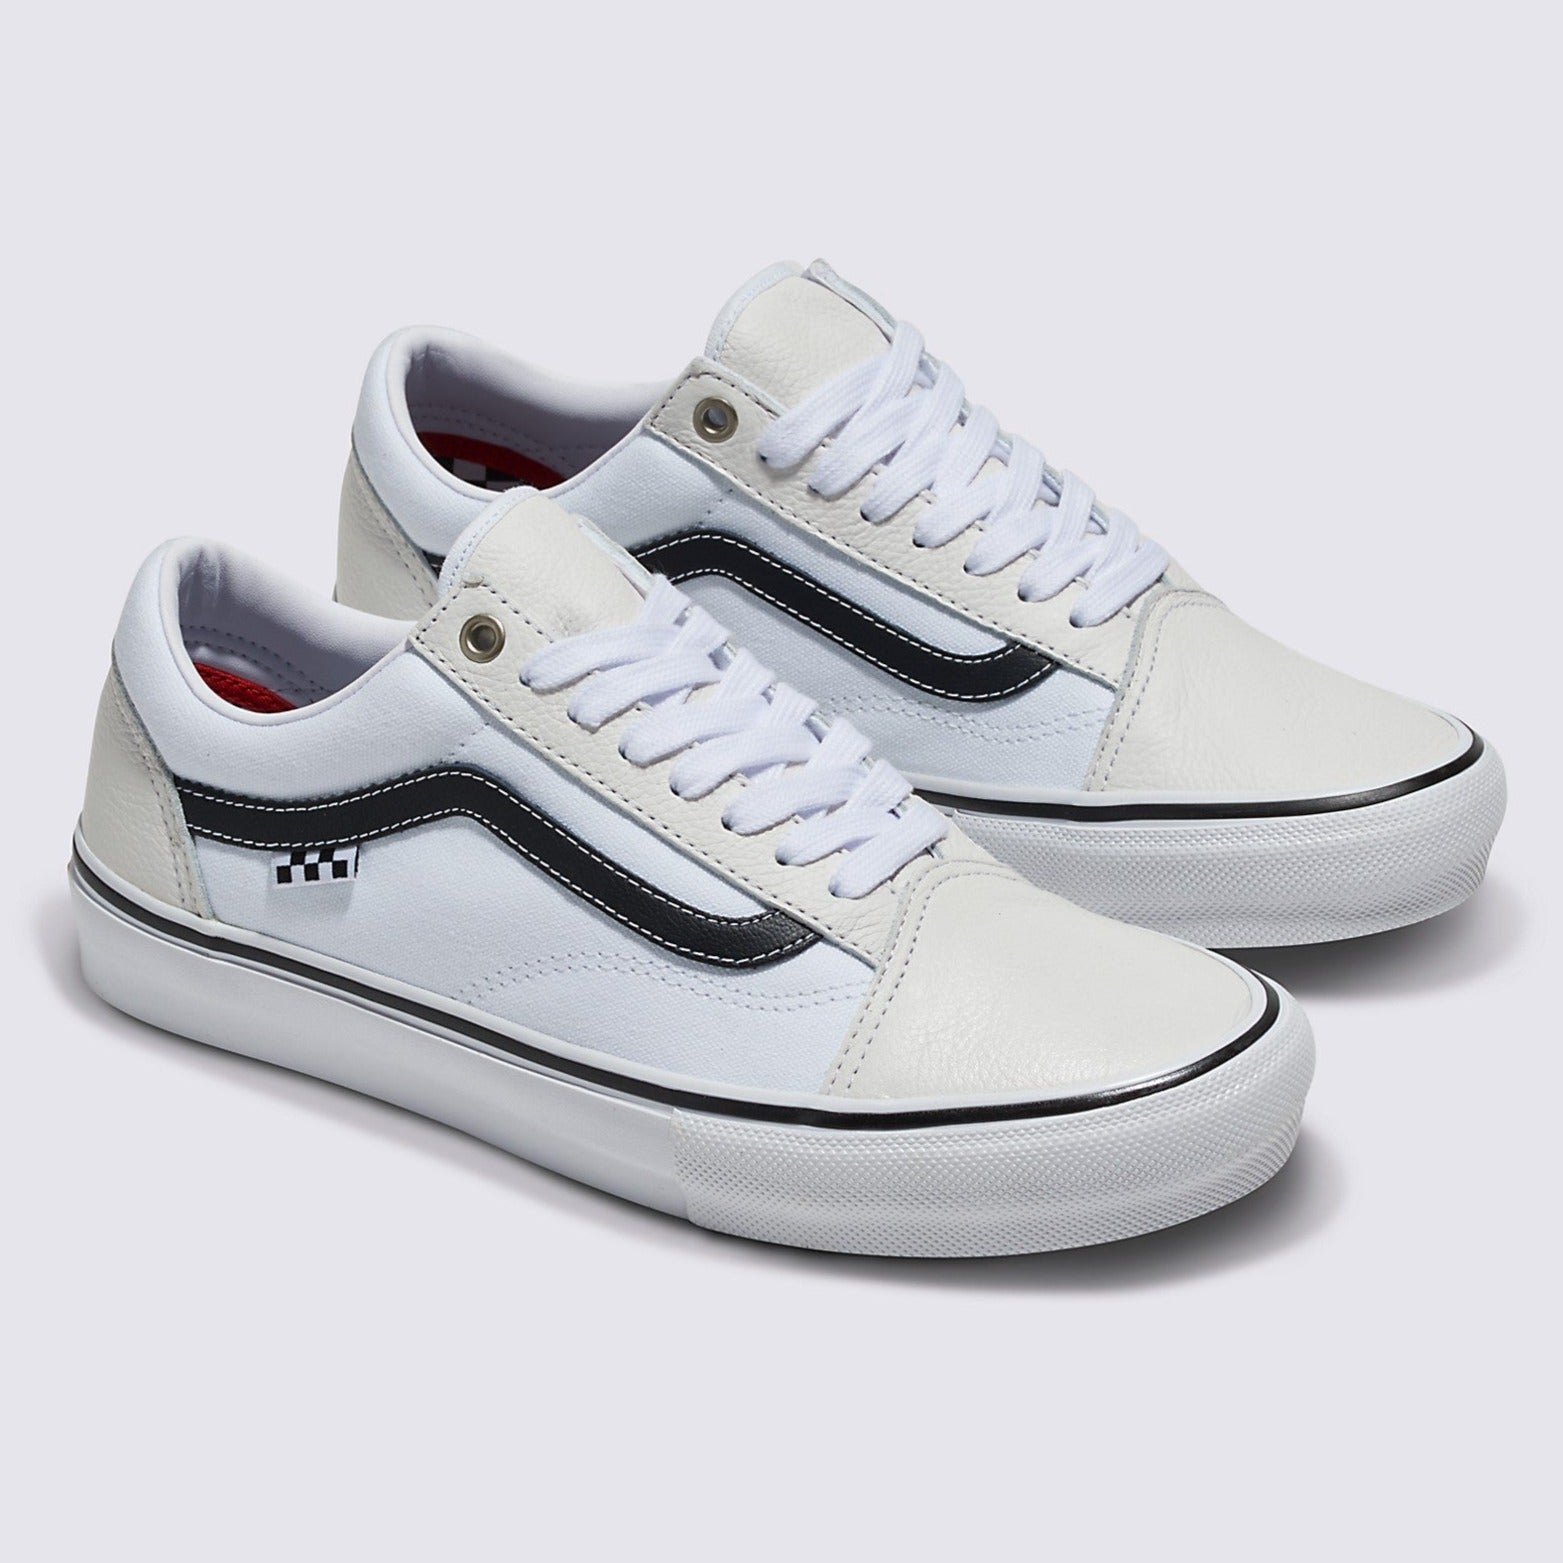 White/White Leather Skate Old Skool Vans Shoes